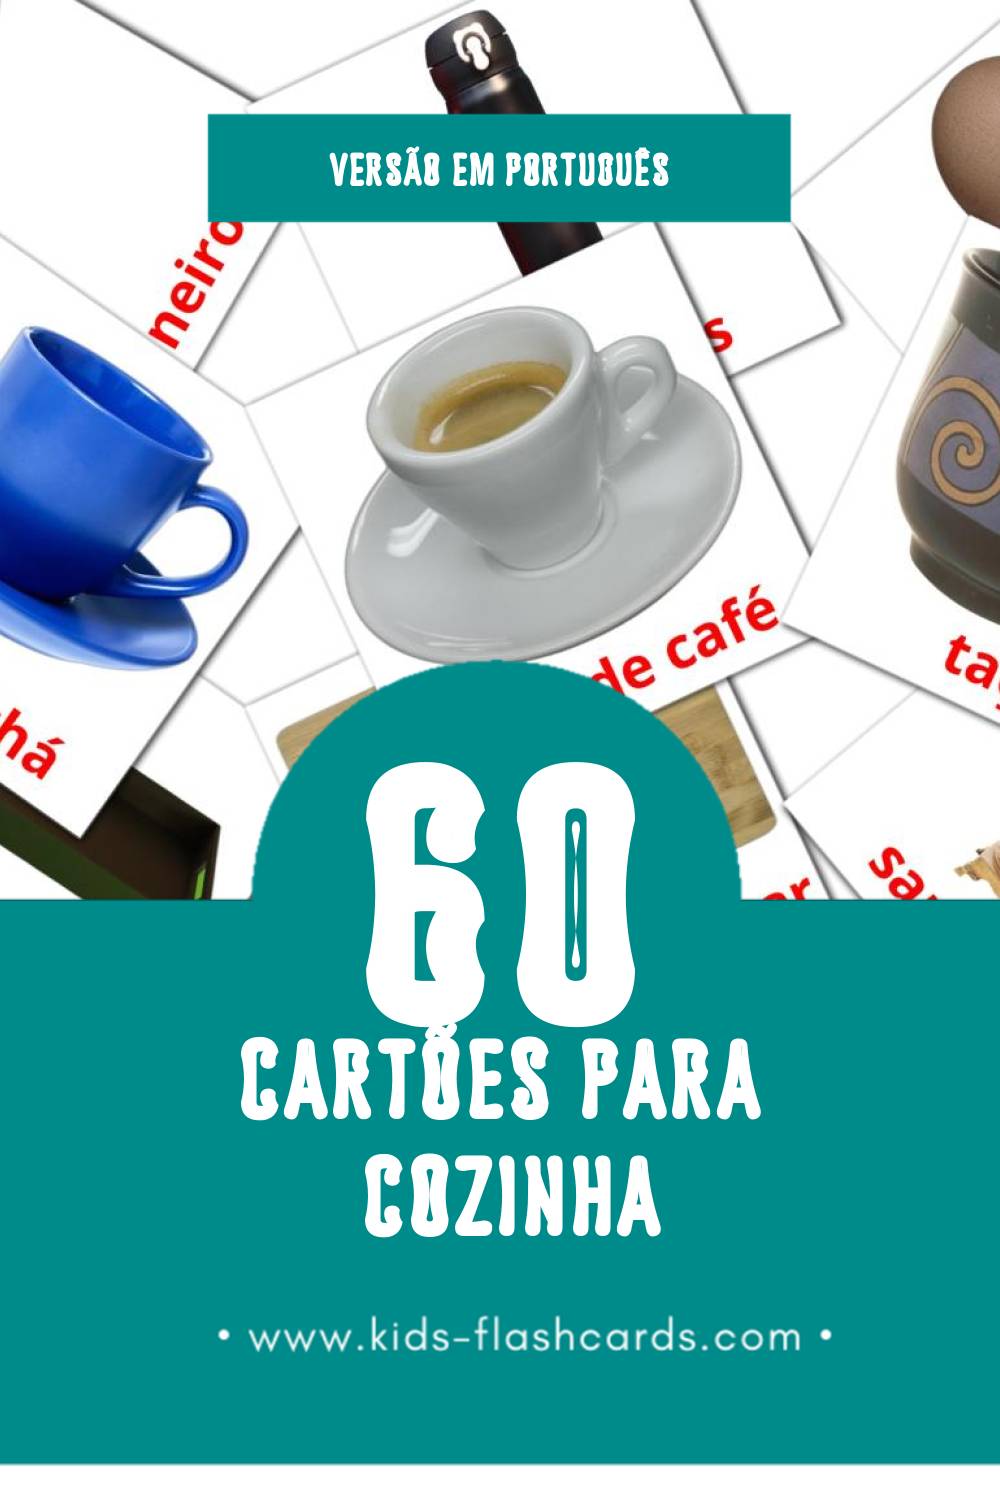 Flashcards de Cozinha Visuais para Toddlers (64 cartões em Português)